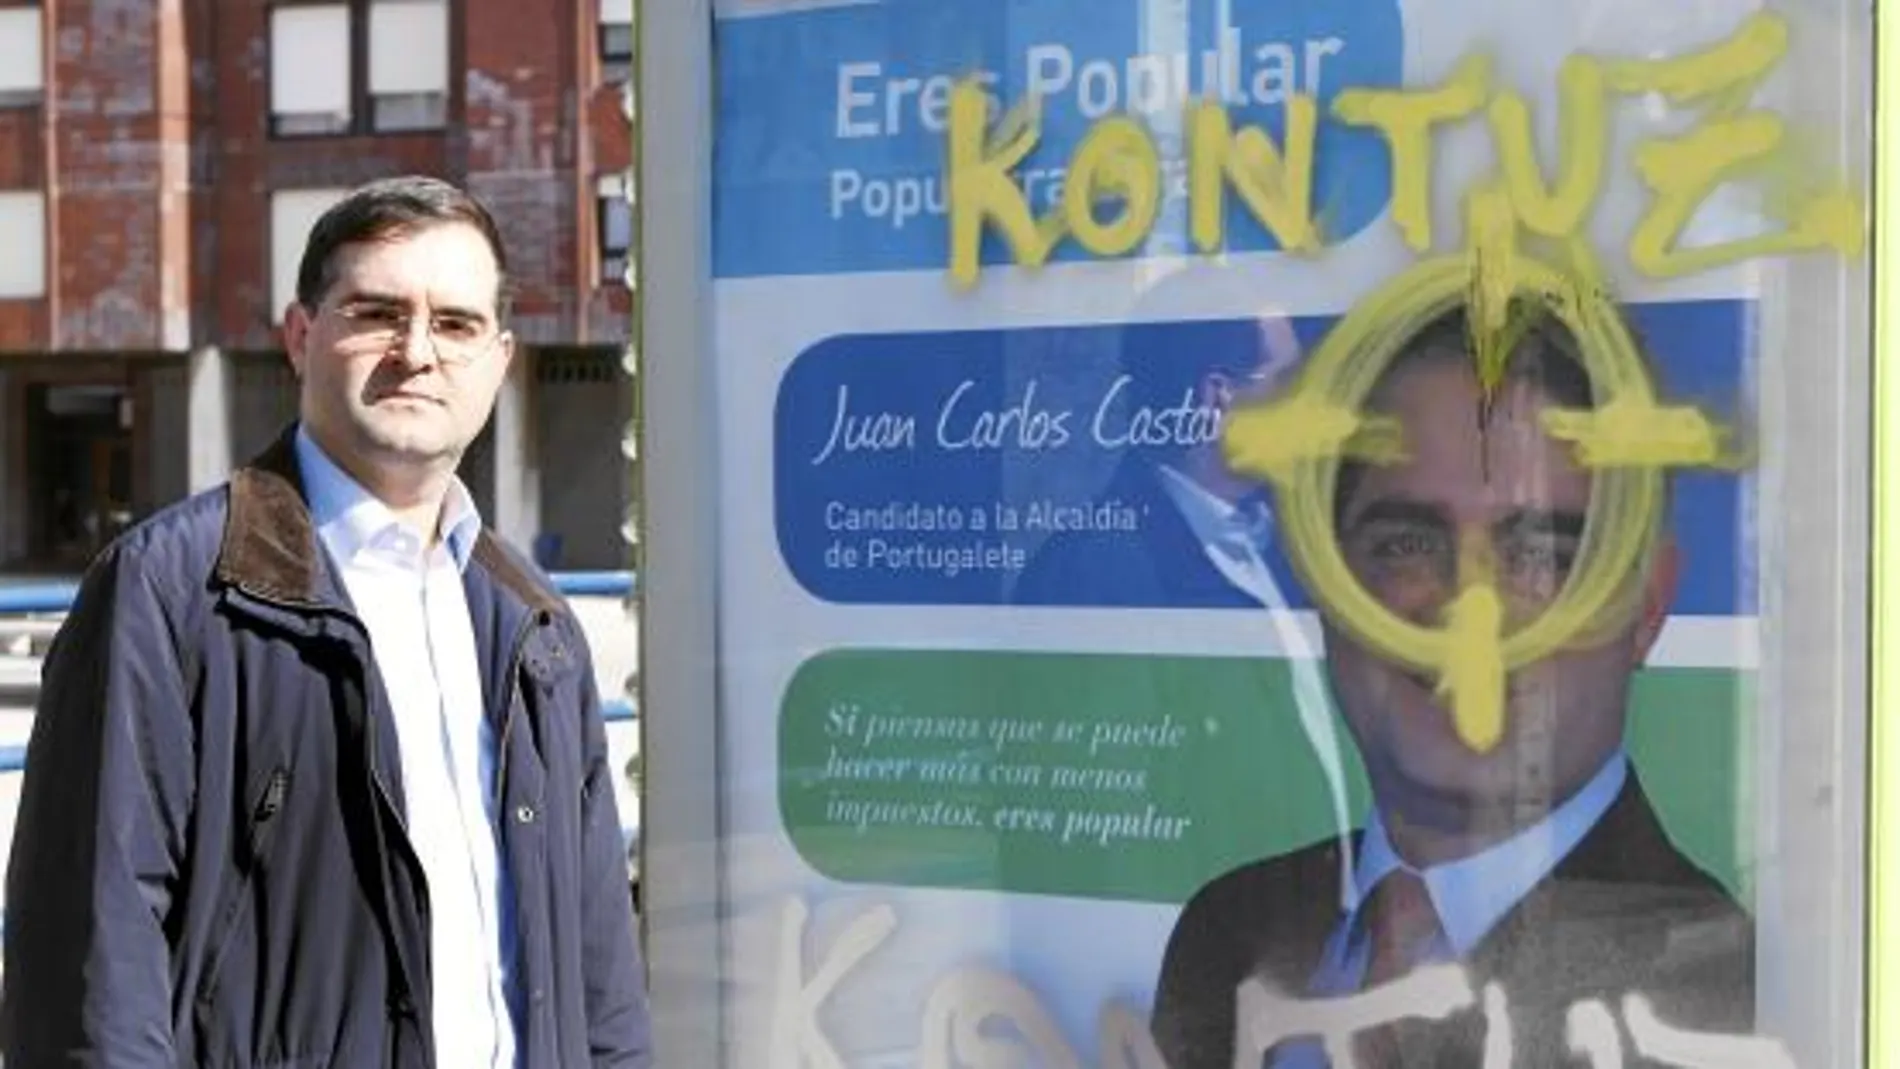 El concejal y candidato del PP a la alcaldía de Portugalete, Vizcaya, al lado de la pintada amenazante